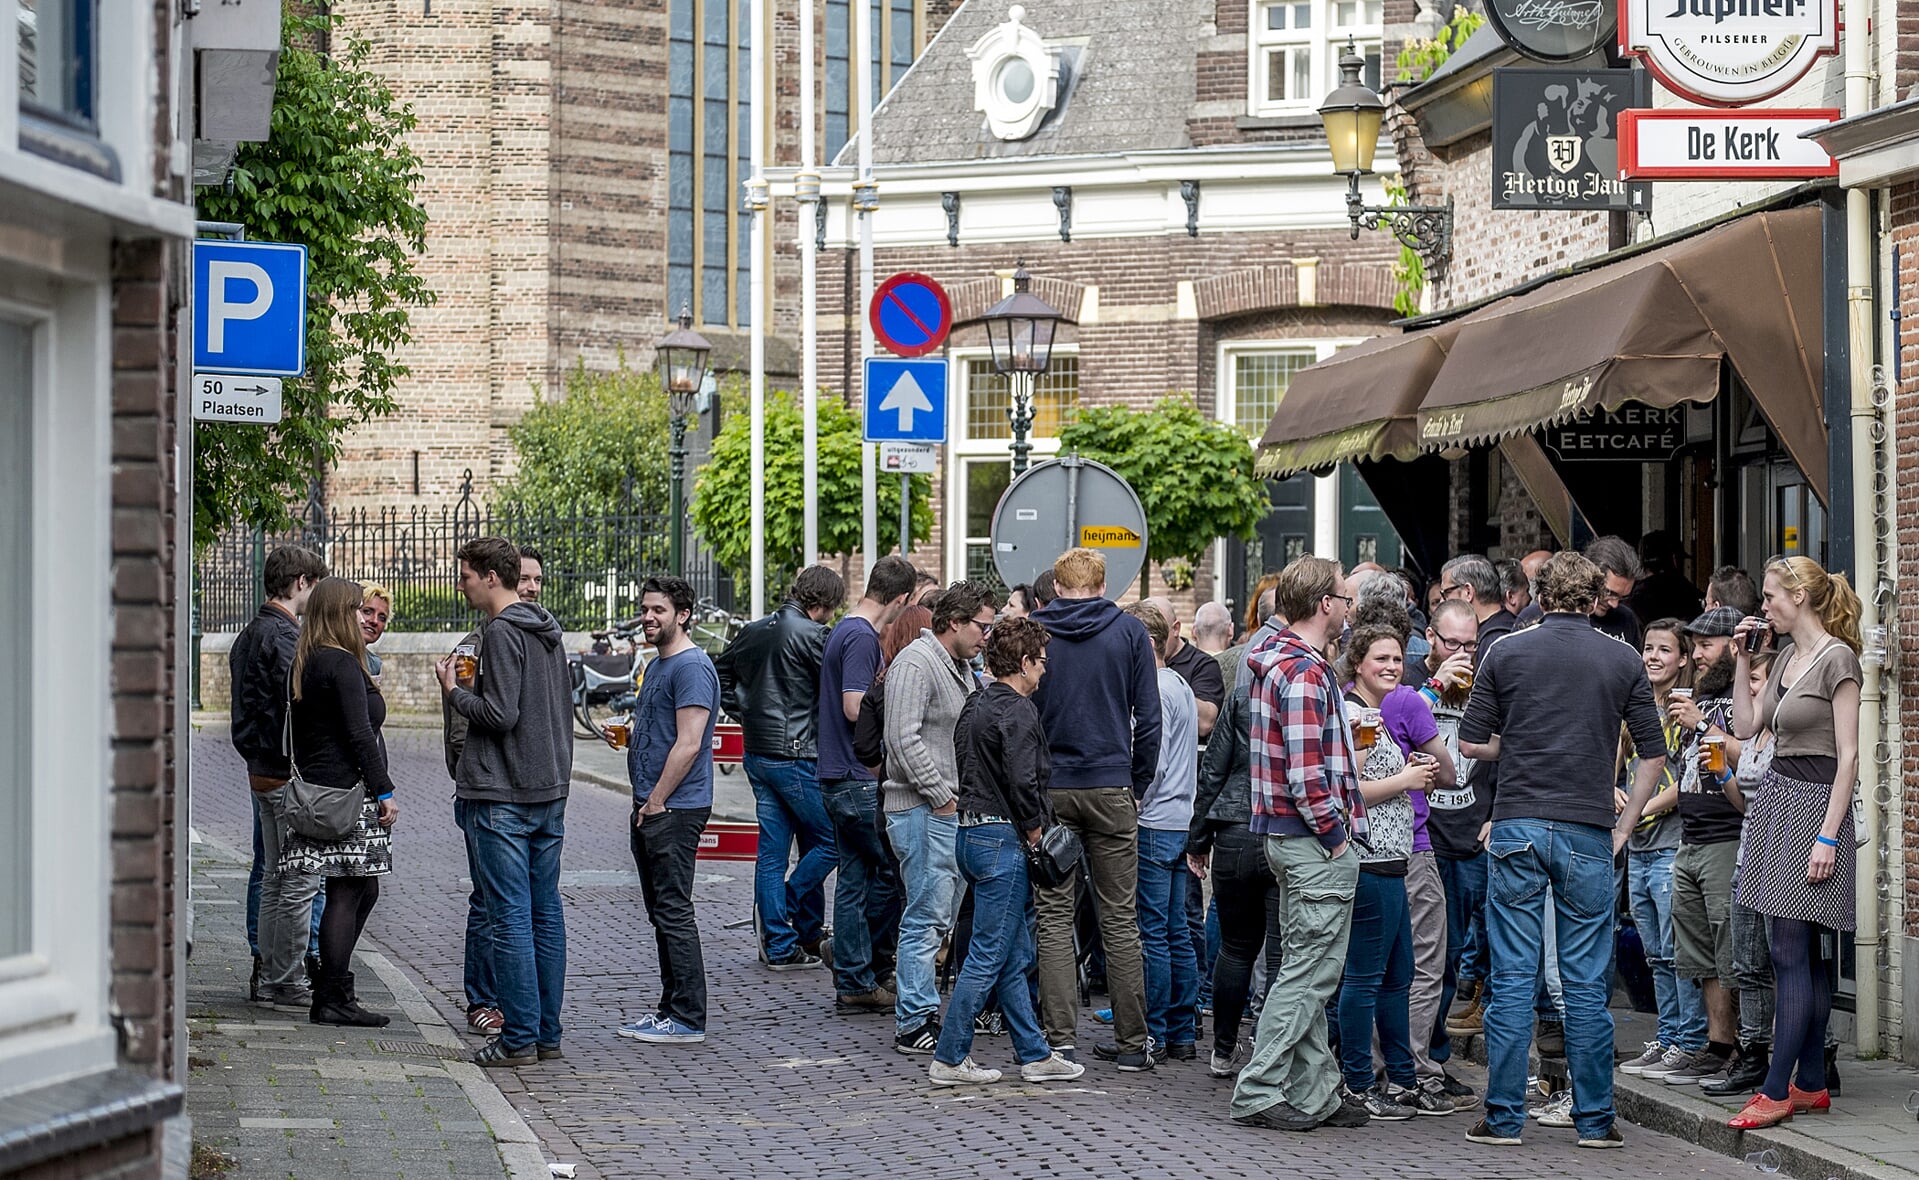 Bezoekers van Church Open Air verzamelen zich voor eetcafé De Kerk. Binnen zijn de optredens, buiten kan gekletst en gedronken worden. (Foto: Peter de Koning).